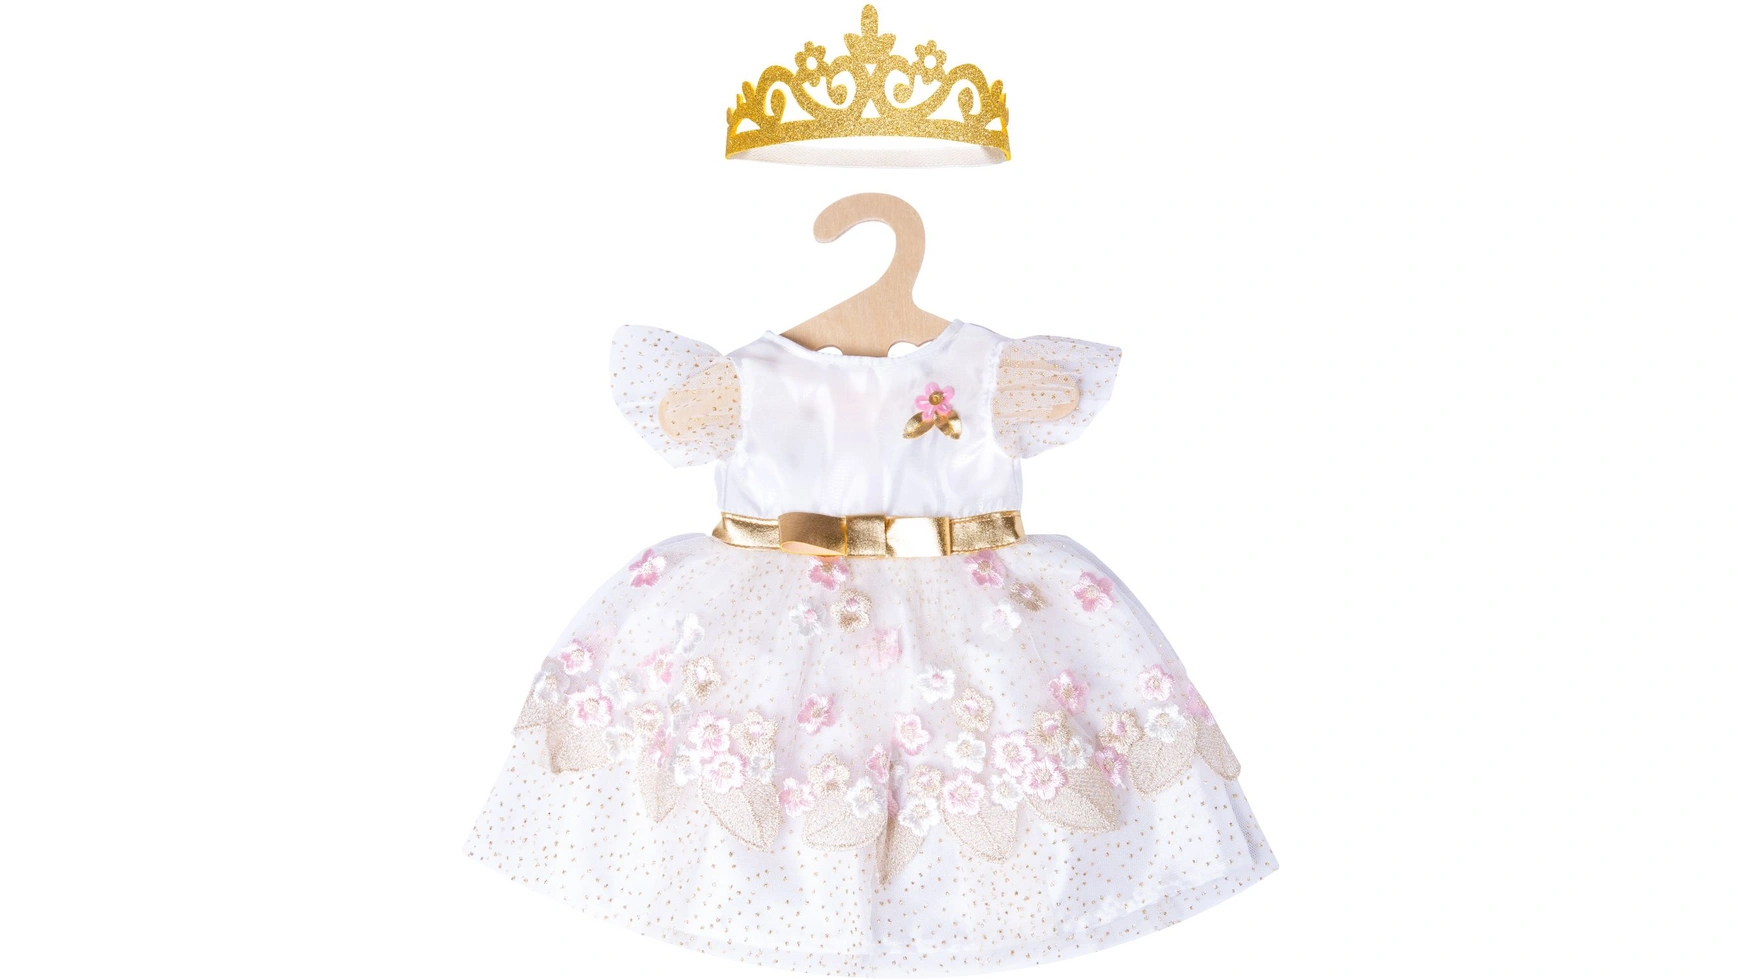 Кукла принцесса в платье вишневого цвета с золотой короной, размер 28-35см Heless